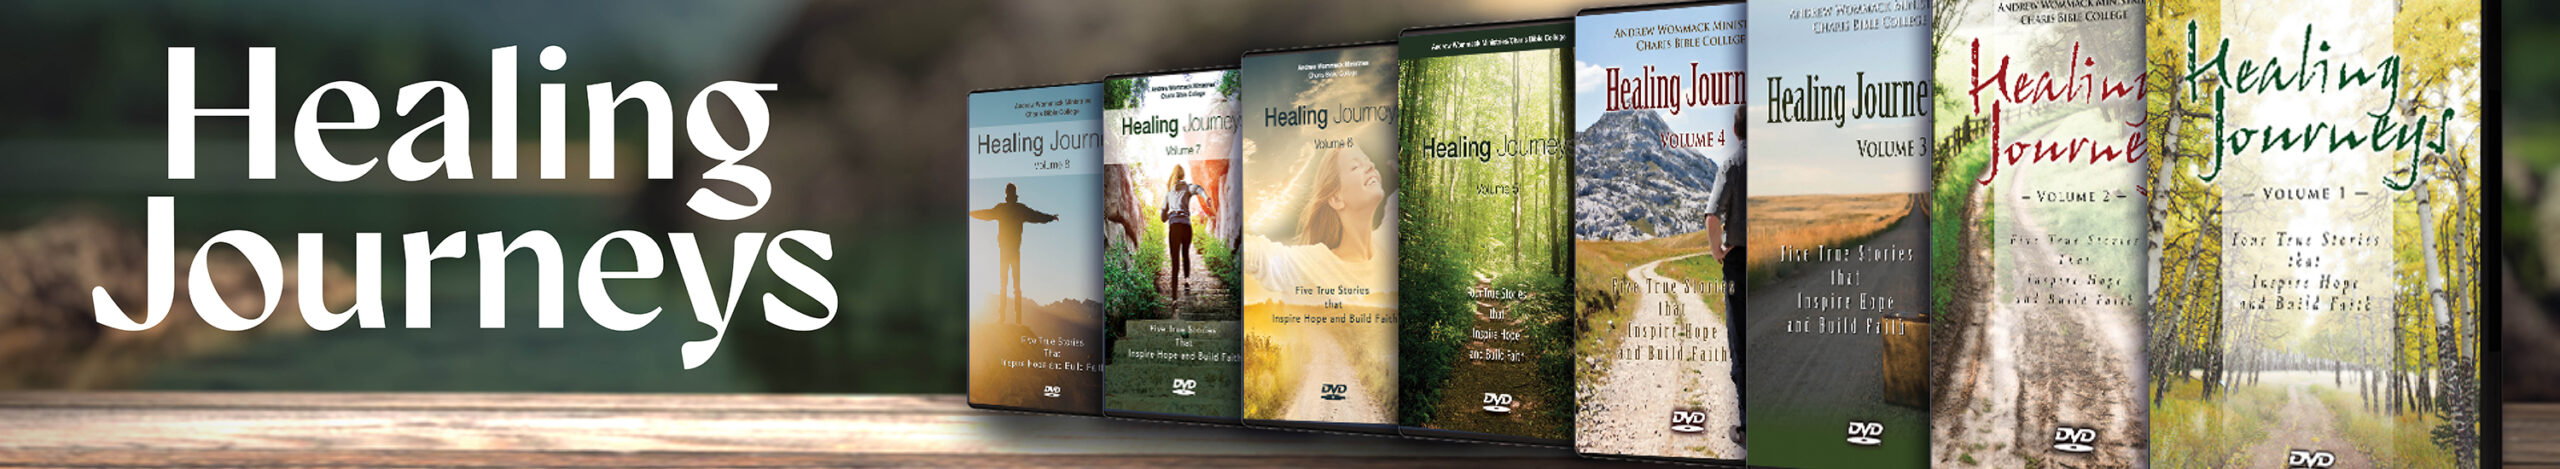 Healing journeys bundle